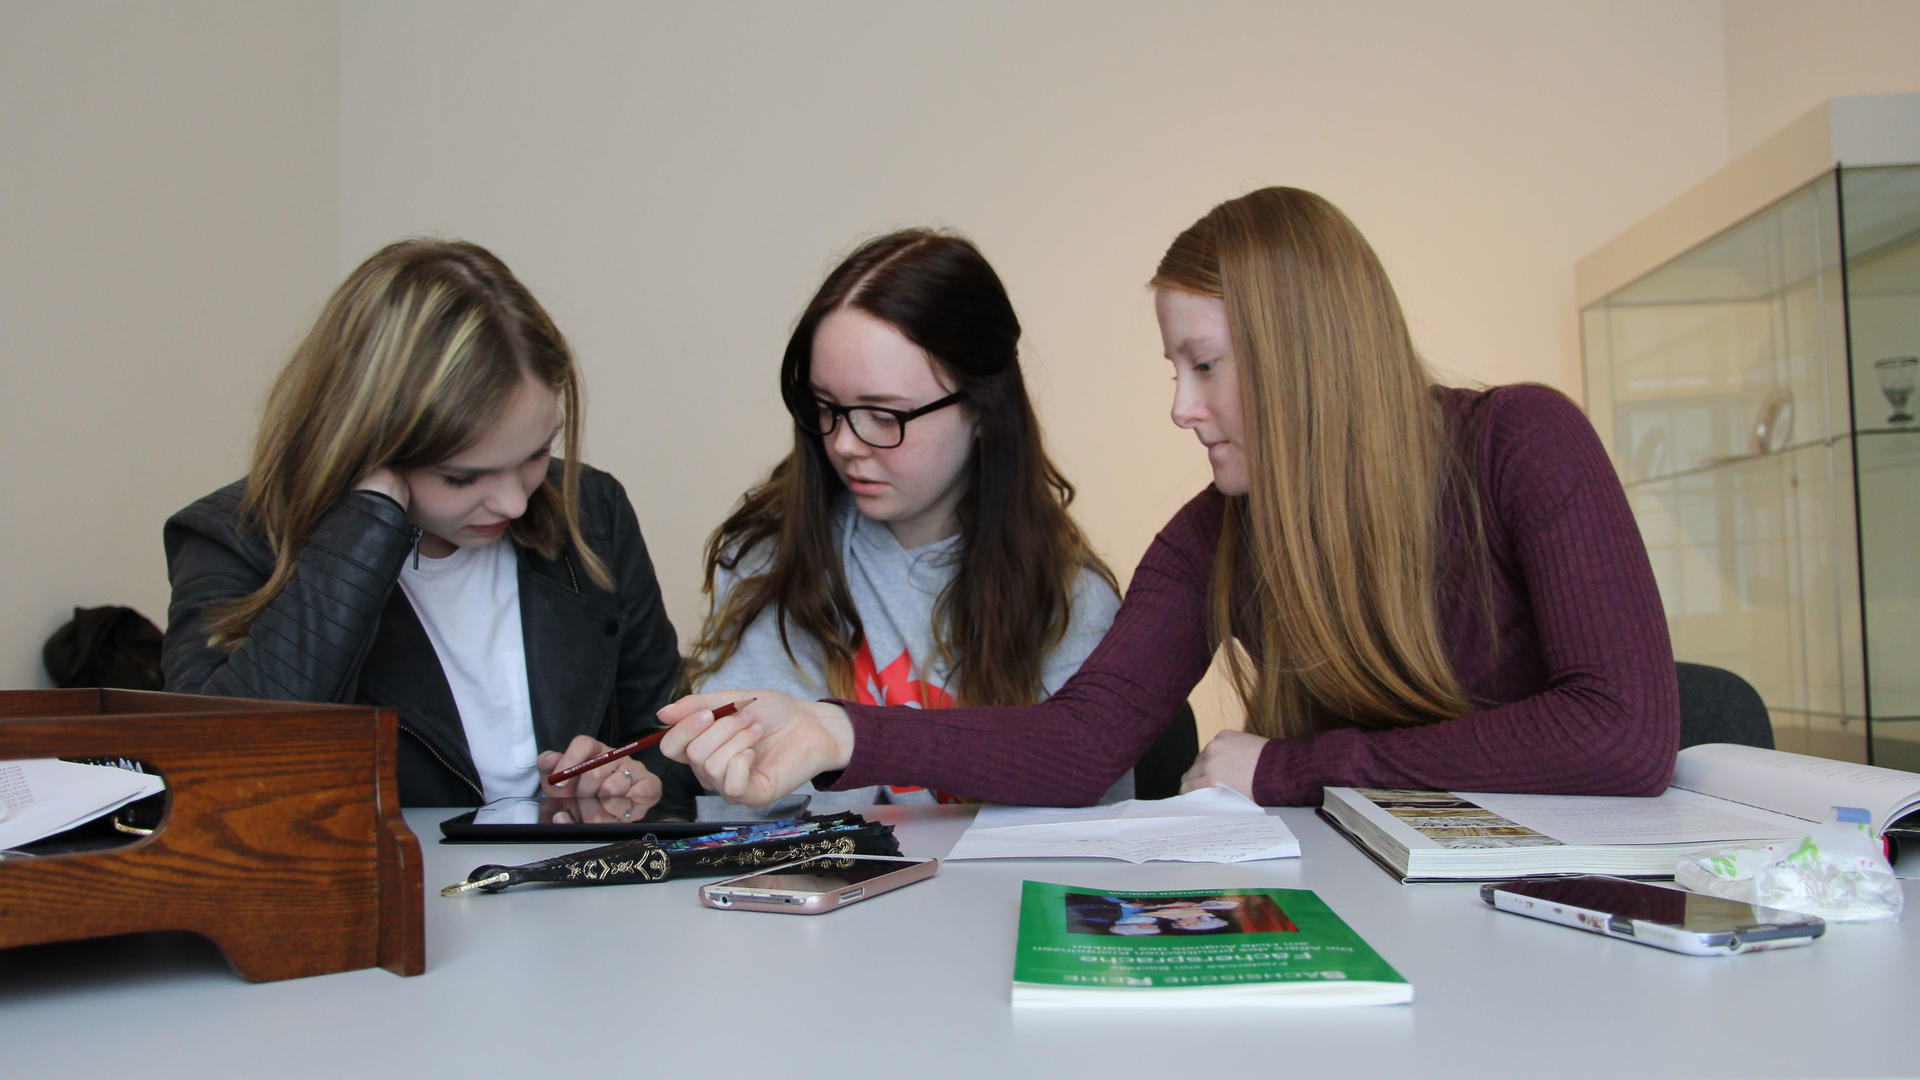 Drei ältere Schülerinnen sitzen vor einer Vitrine des Museums an einem Tisch und arbeiten zusammen an einem Tablet. Vor ihnen liegen Arbeitsmaterialien, Bücher und ein Exponat aus Holz.